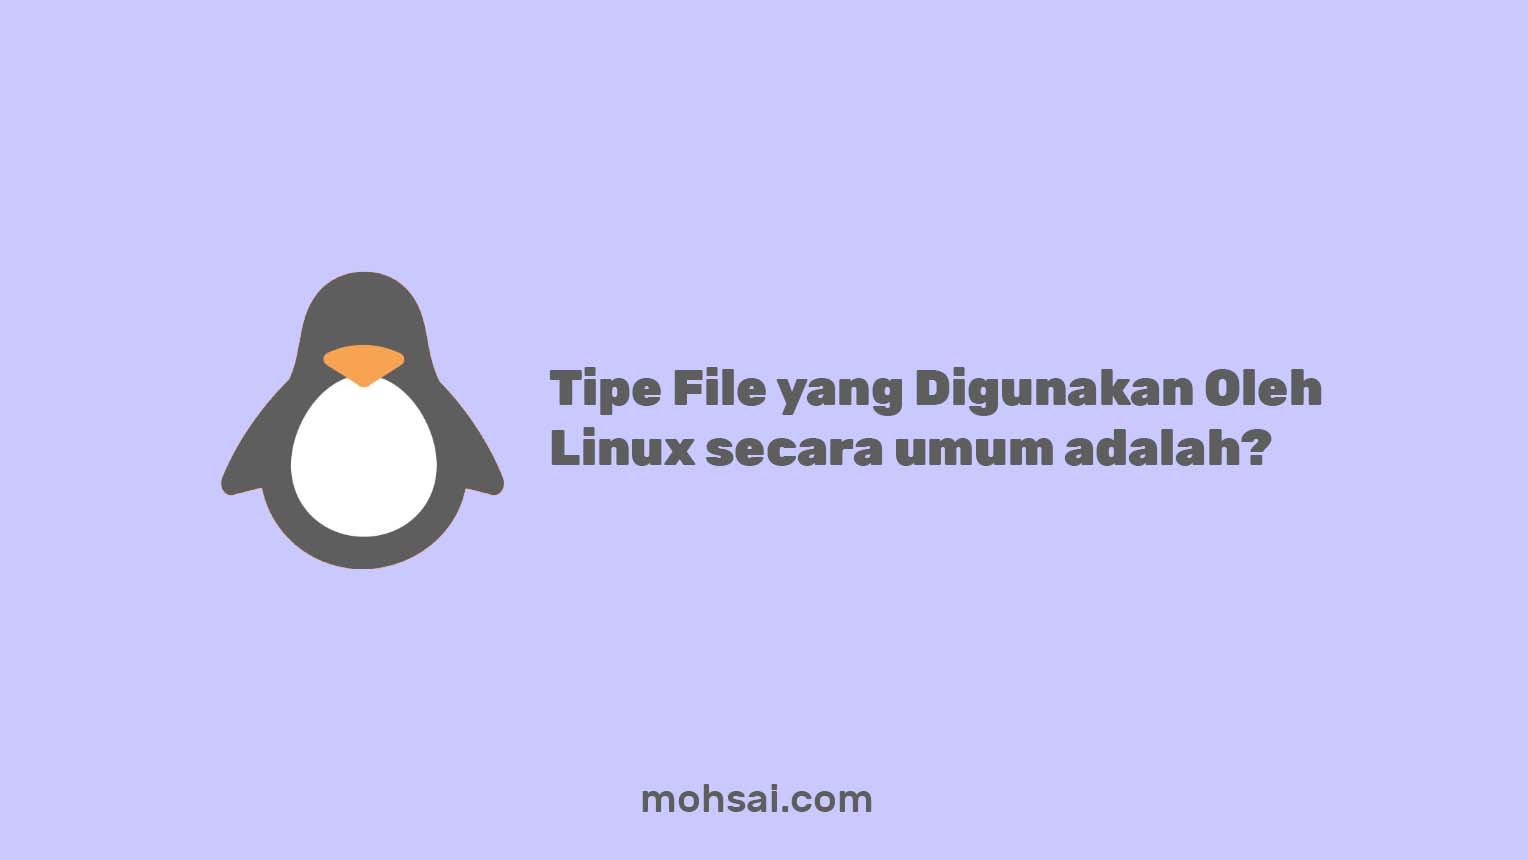 Tipe File yang Digunakan Oleh Linux secara umum adalah Ext3